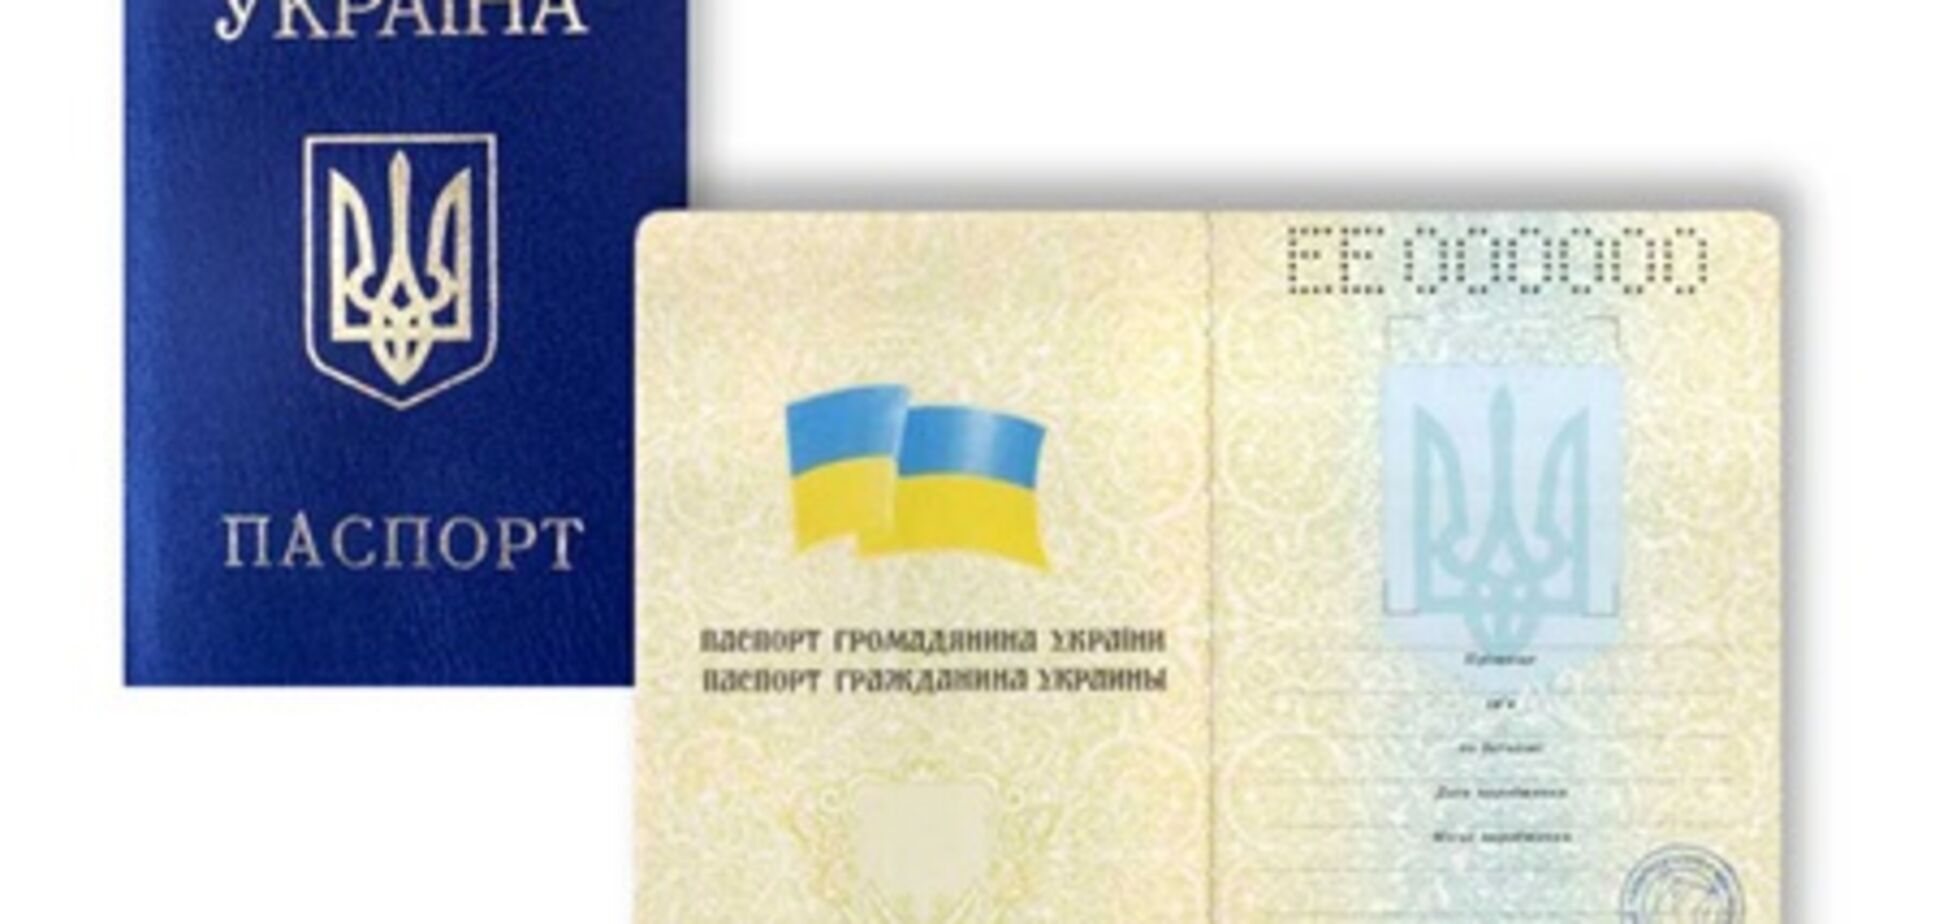 Перед виборами українцям псують паспорта